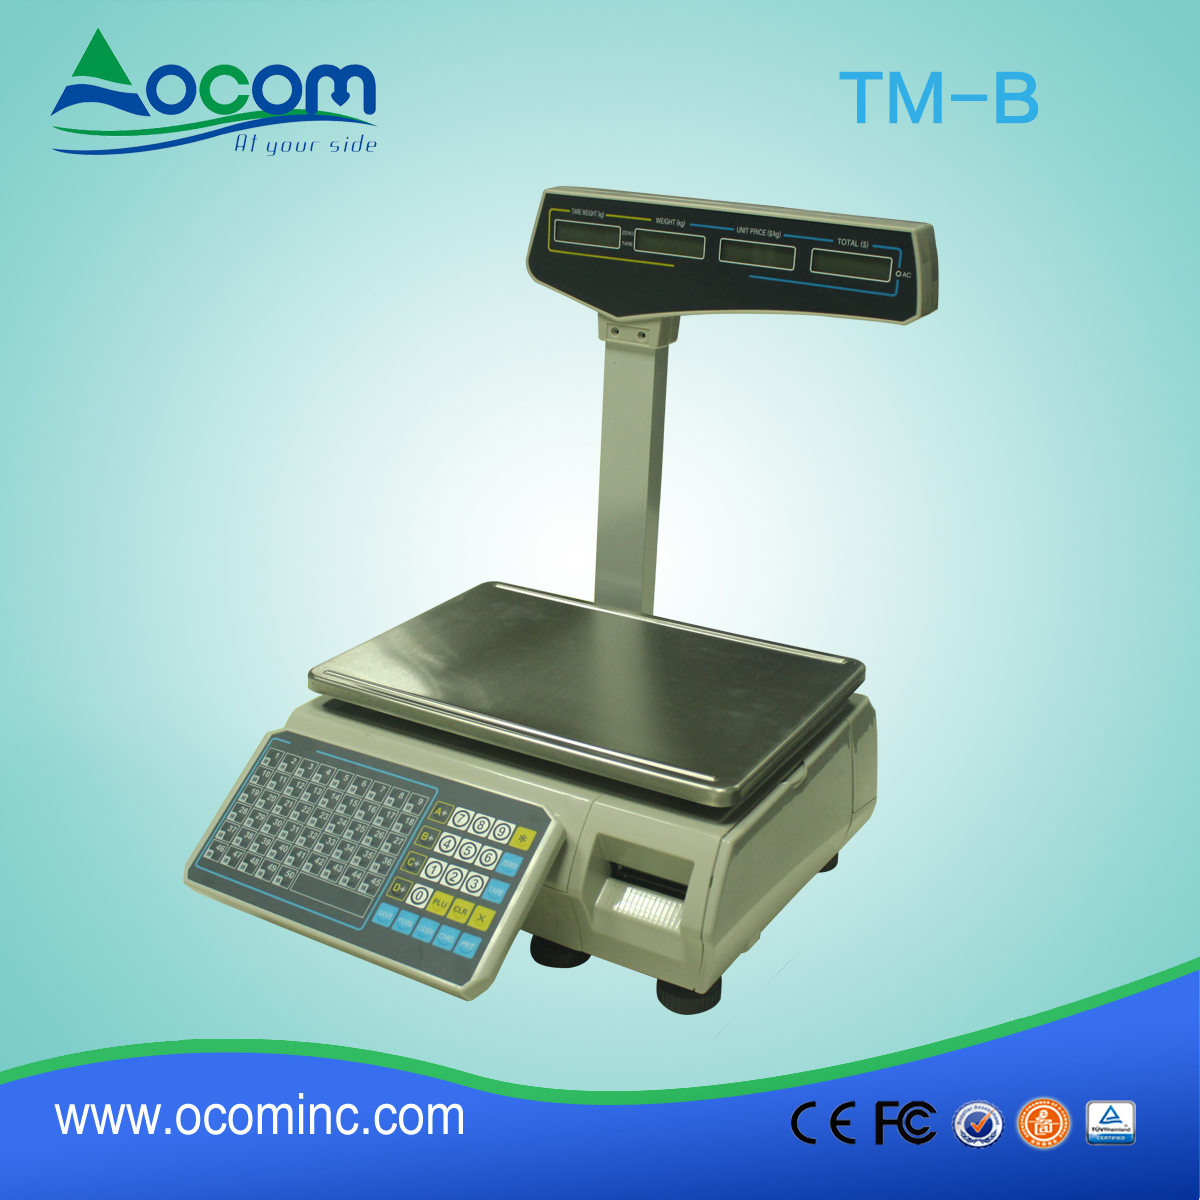 (TM-B) China gemaakt van low-cost thermische barcode afdrukken schaal